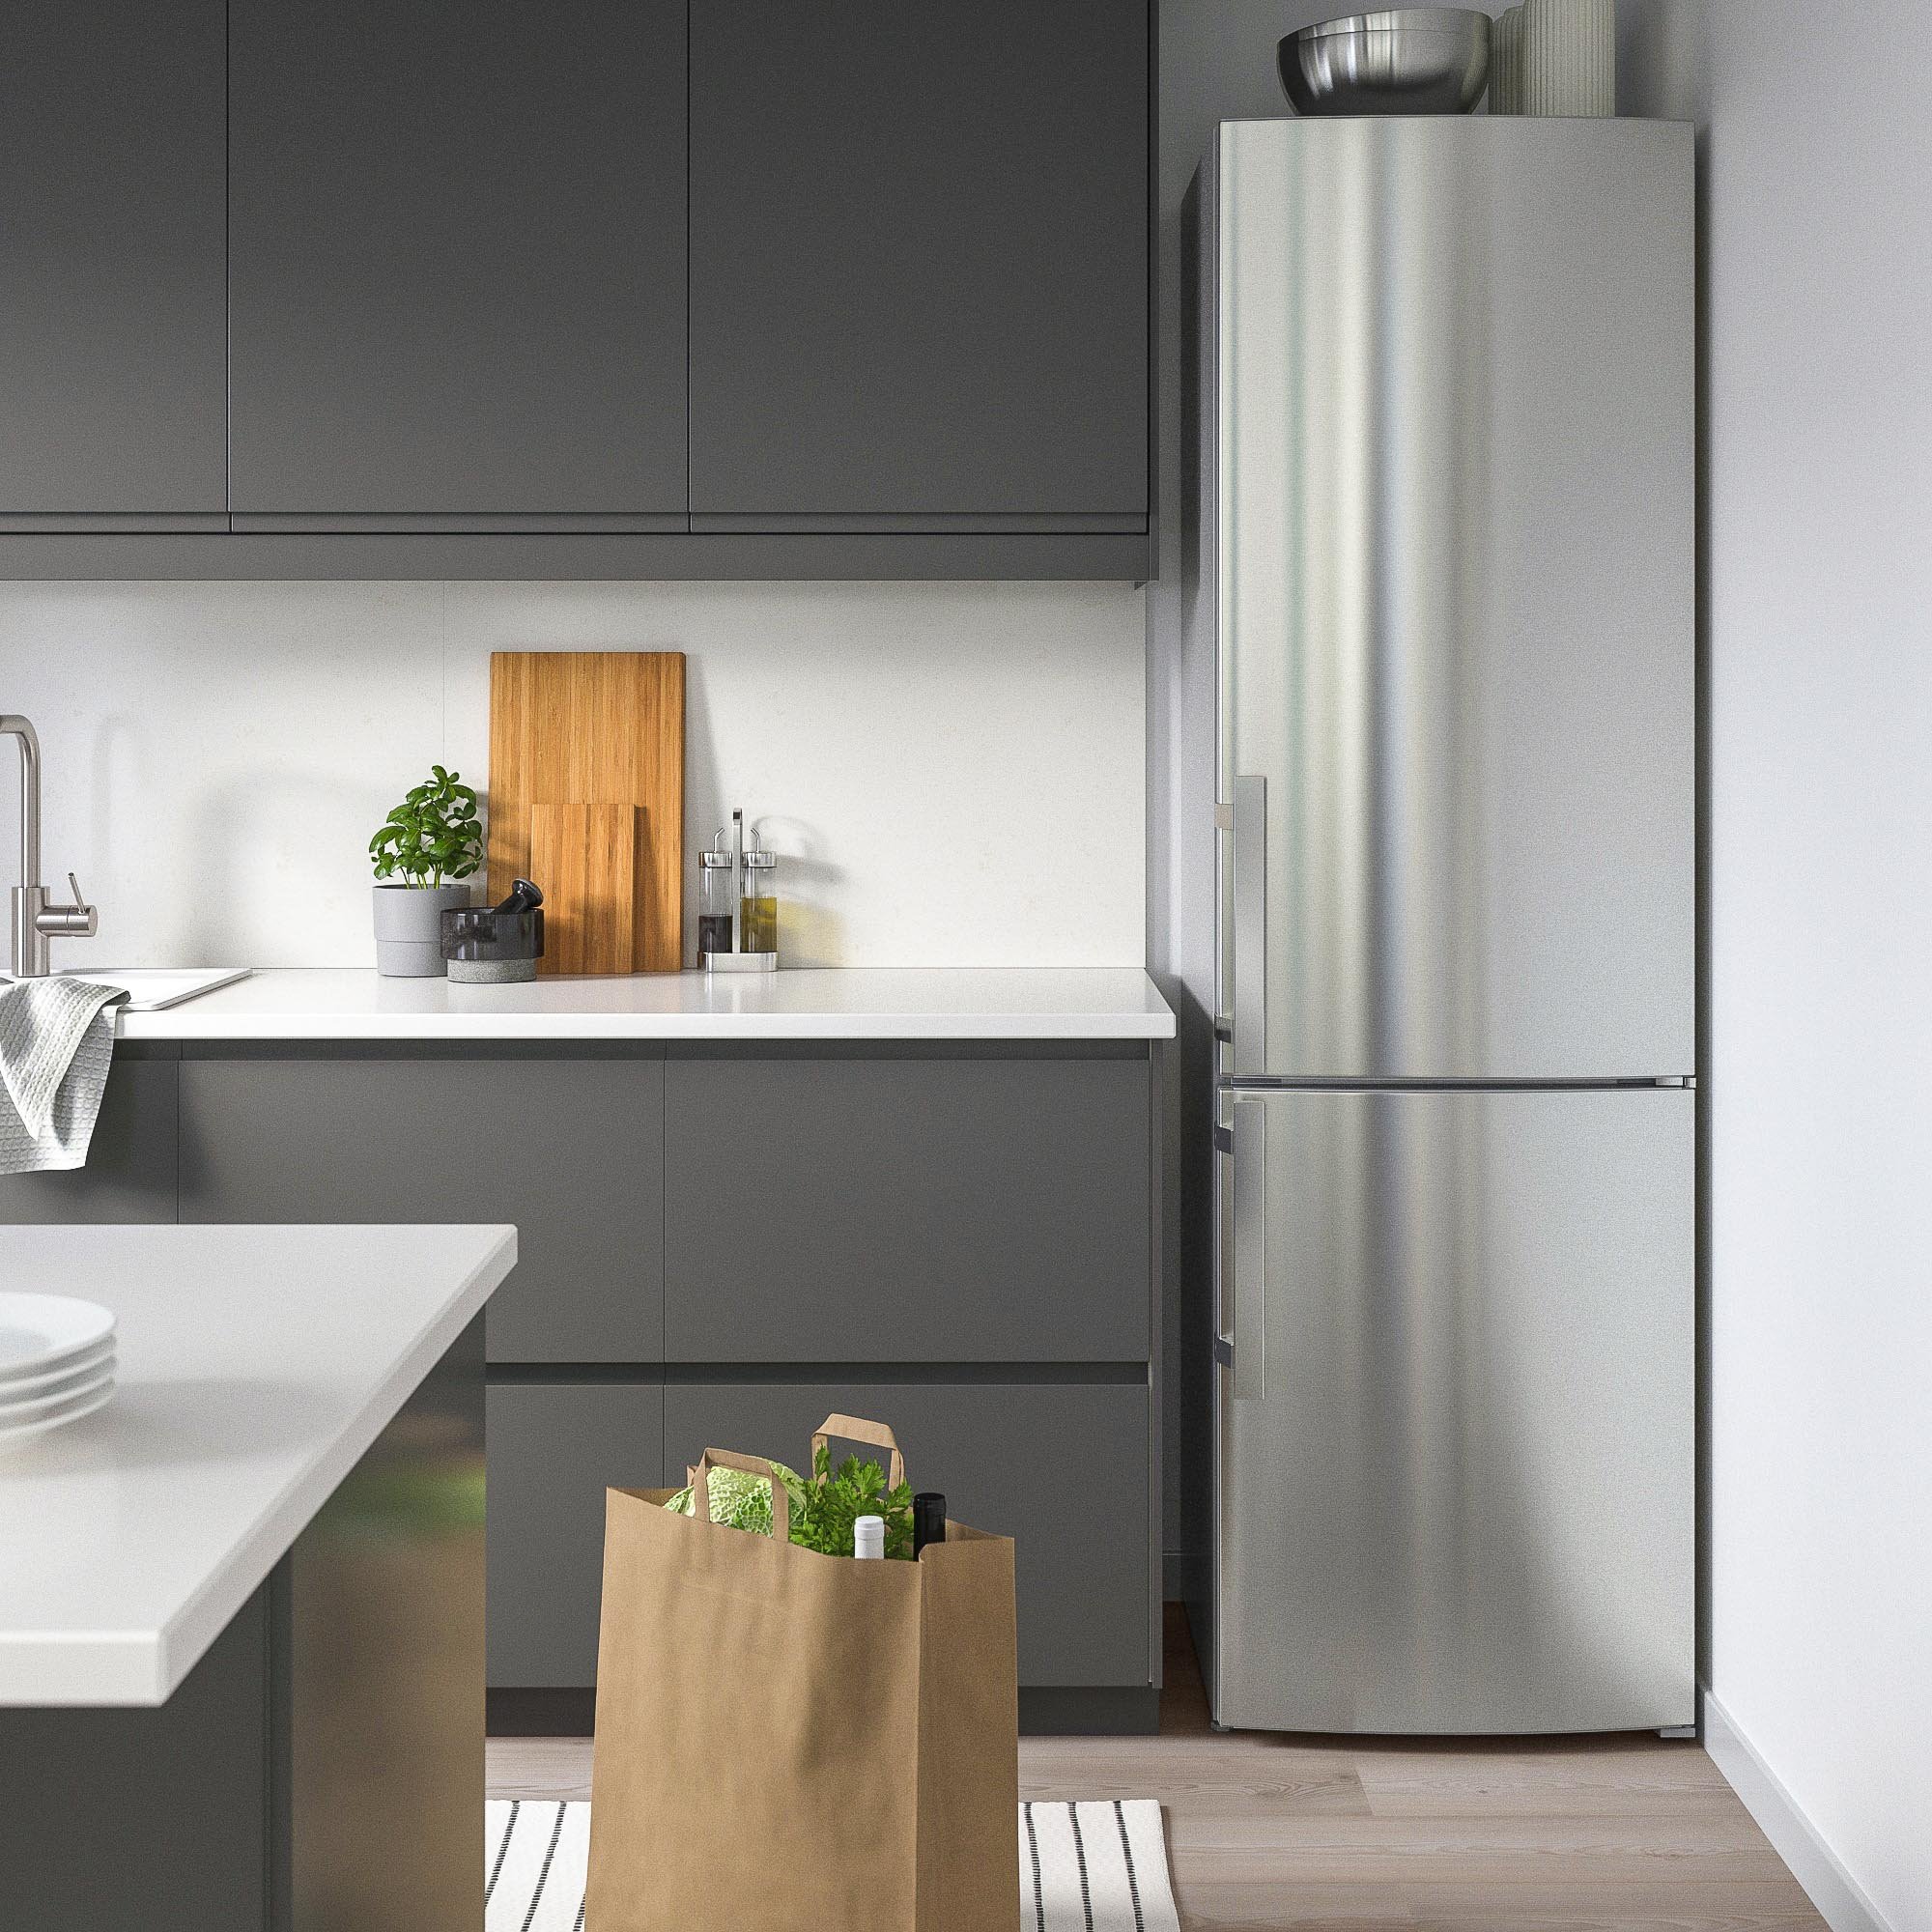 IKEA Hogar sostenible cocina y electrodomesticos. Electrodomésticos de bajo consumo 